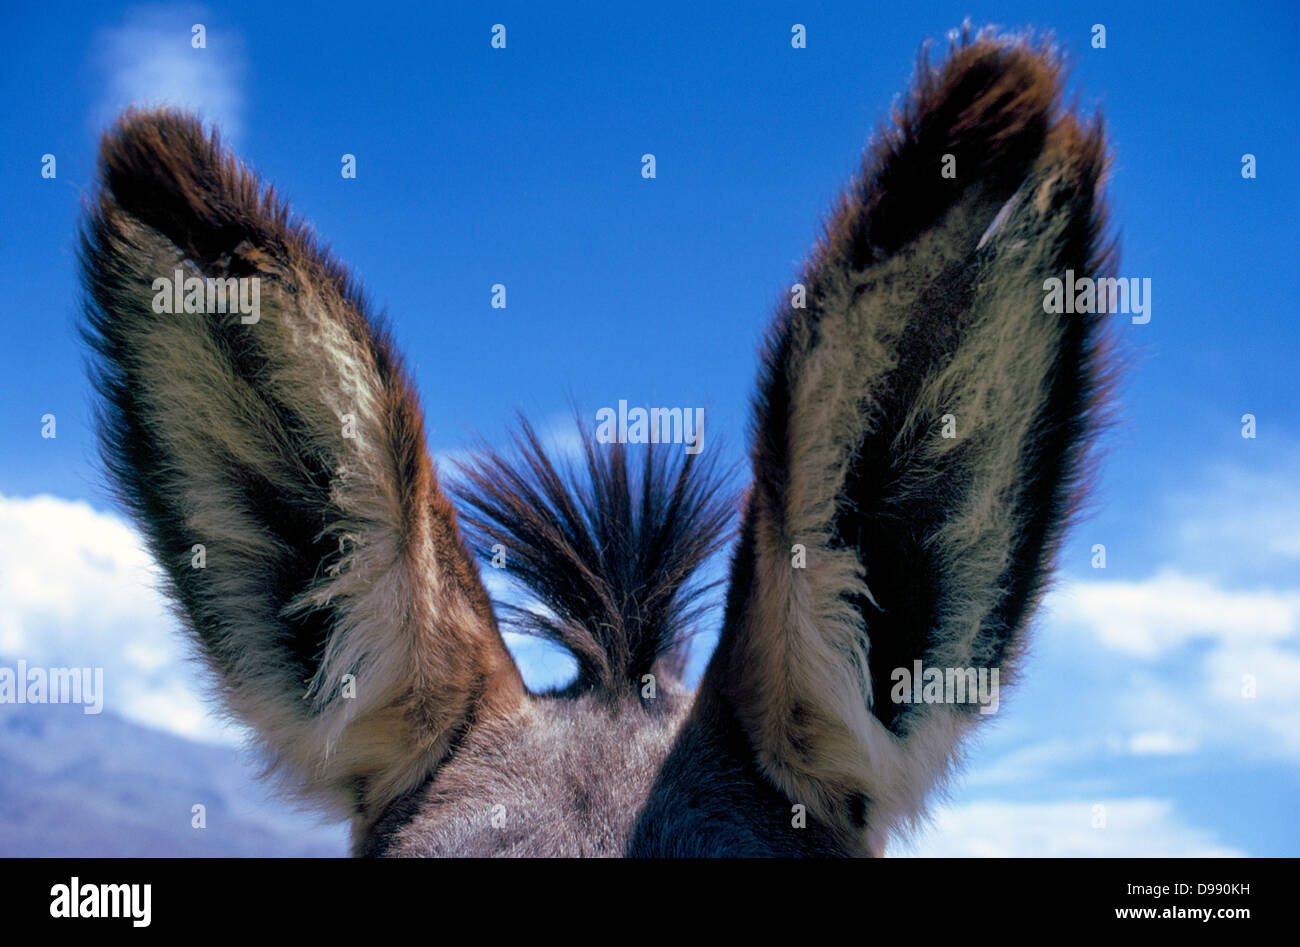 Ascoltate! Un close-up delle grandi orecchie di un mulo che vengono sollevati in avanti per una migliore ricezione del segnale sonoro l'animale sente.Un mulo è asino-cavallo ibrido. Foto Stock